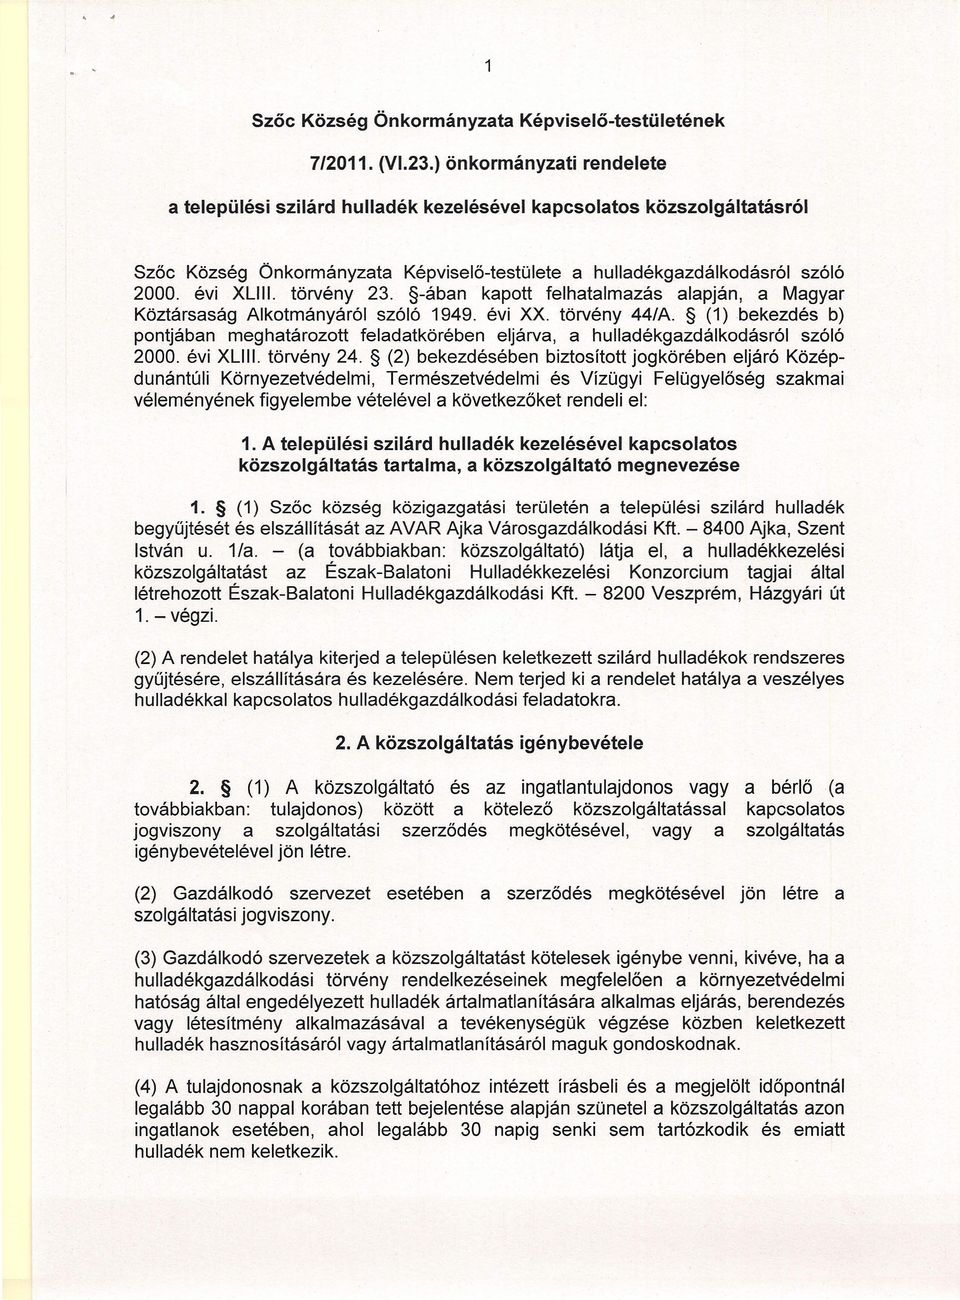 törvény 23. -ában kapott felhatalmazás alapján, a Magyar Köztársaság Alkotmányáról szóló 1949. évi XX. törvény 44/A.